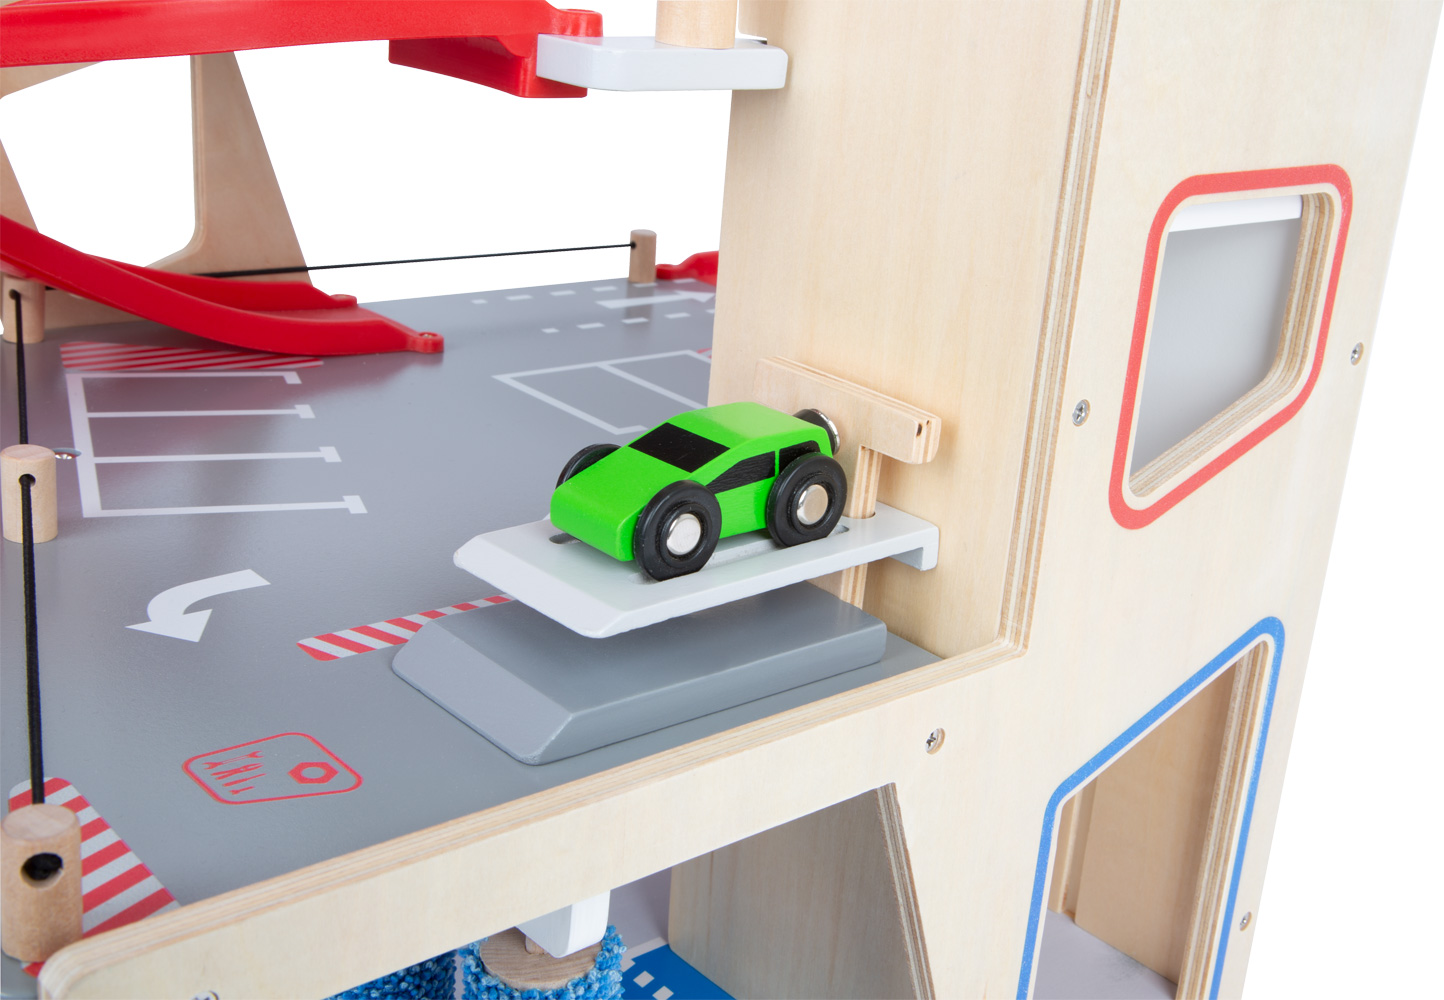 garage pour petite voiture jouet - Recherche Google